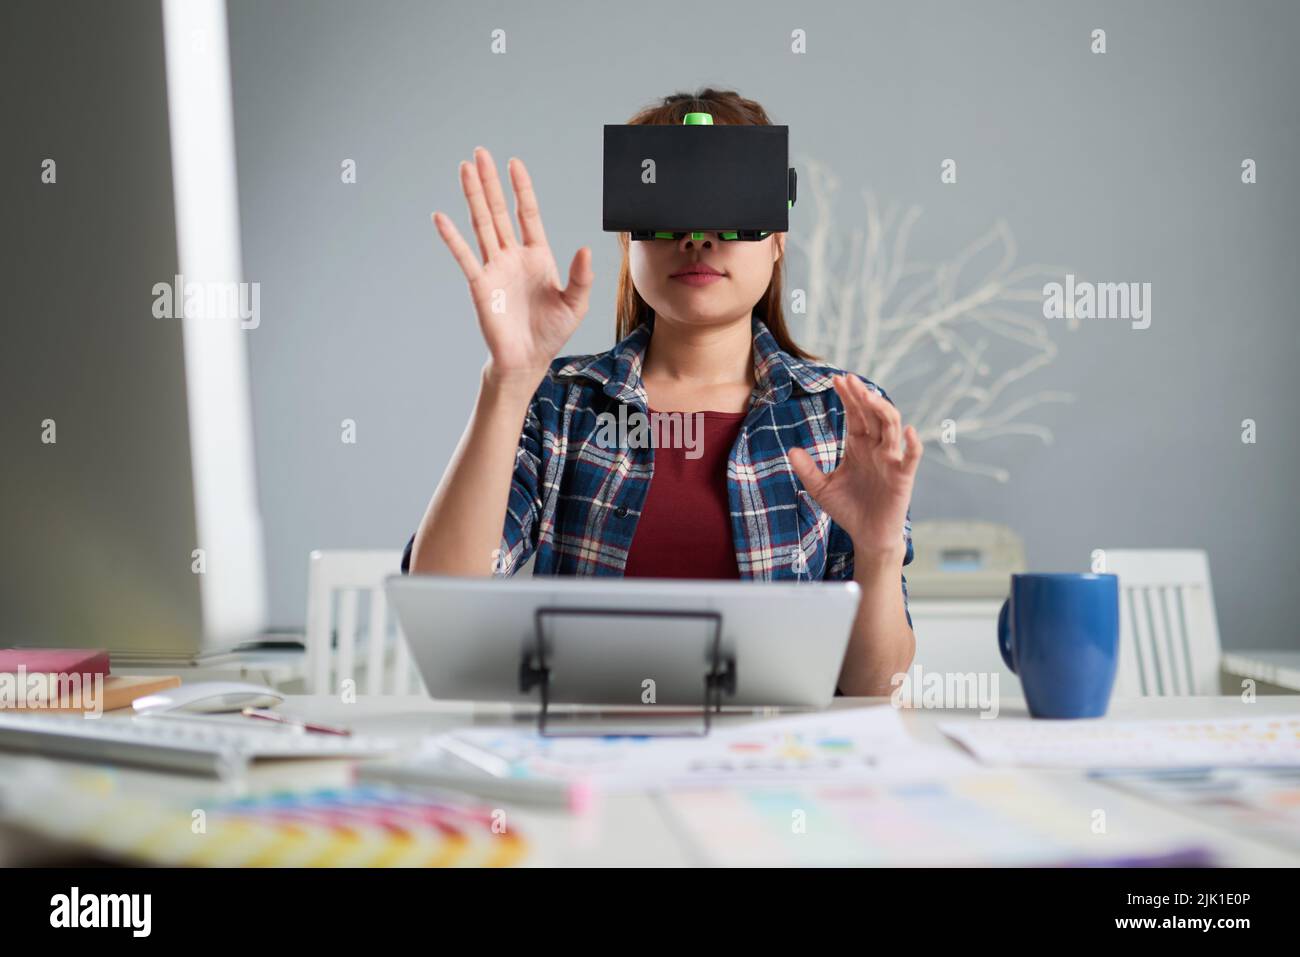 Junge Innenarchitektin in Casualwear, die ein VR-Headset für die Arbeit mit 3D-Visualisierung verwendet, während sie am Schreibtisch eines geräumigen Büros sitzt Stockfoto